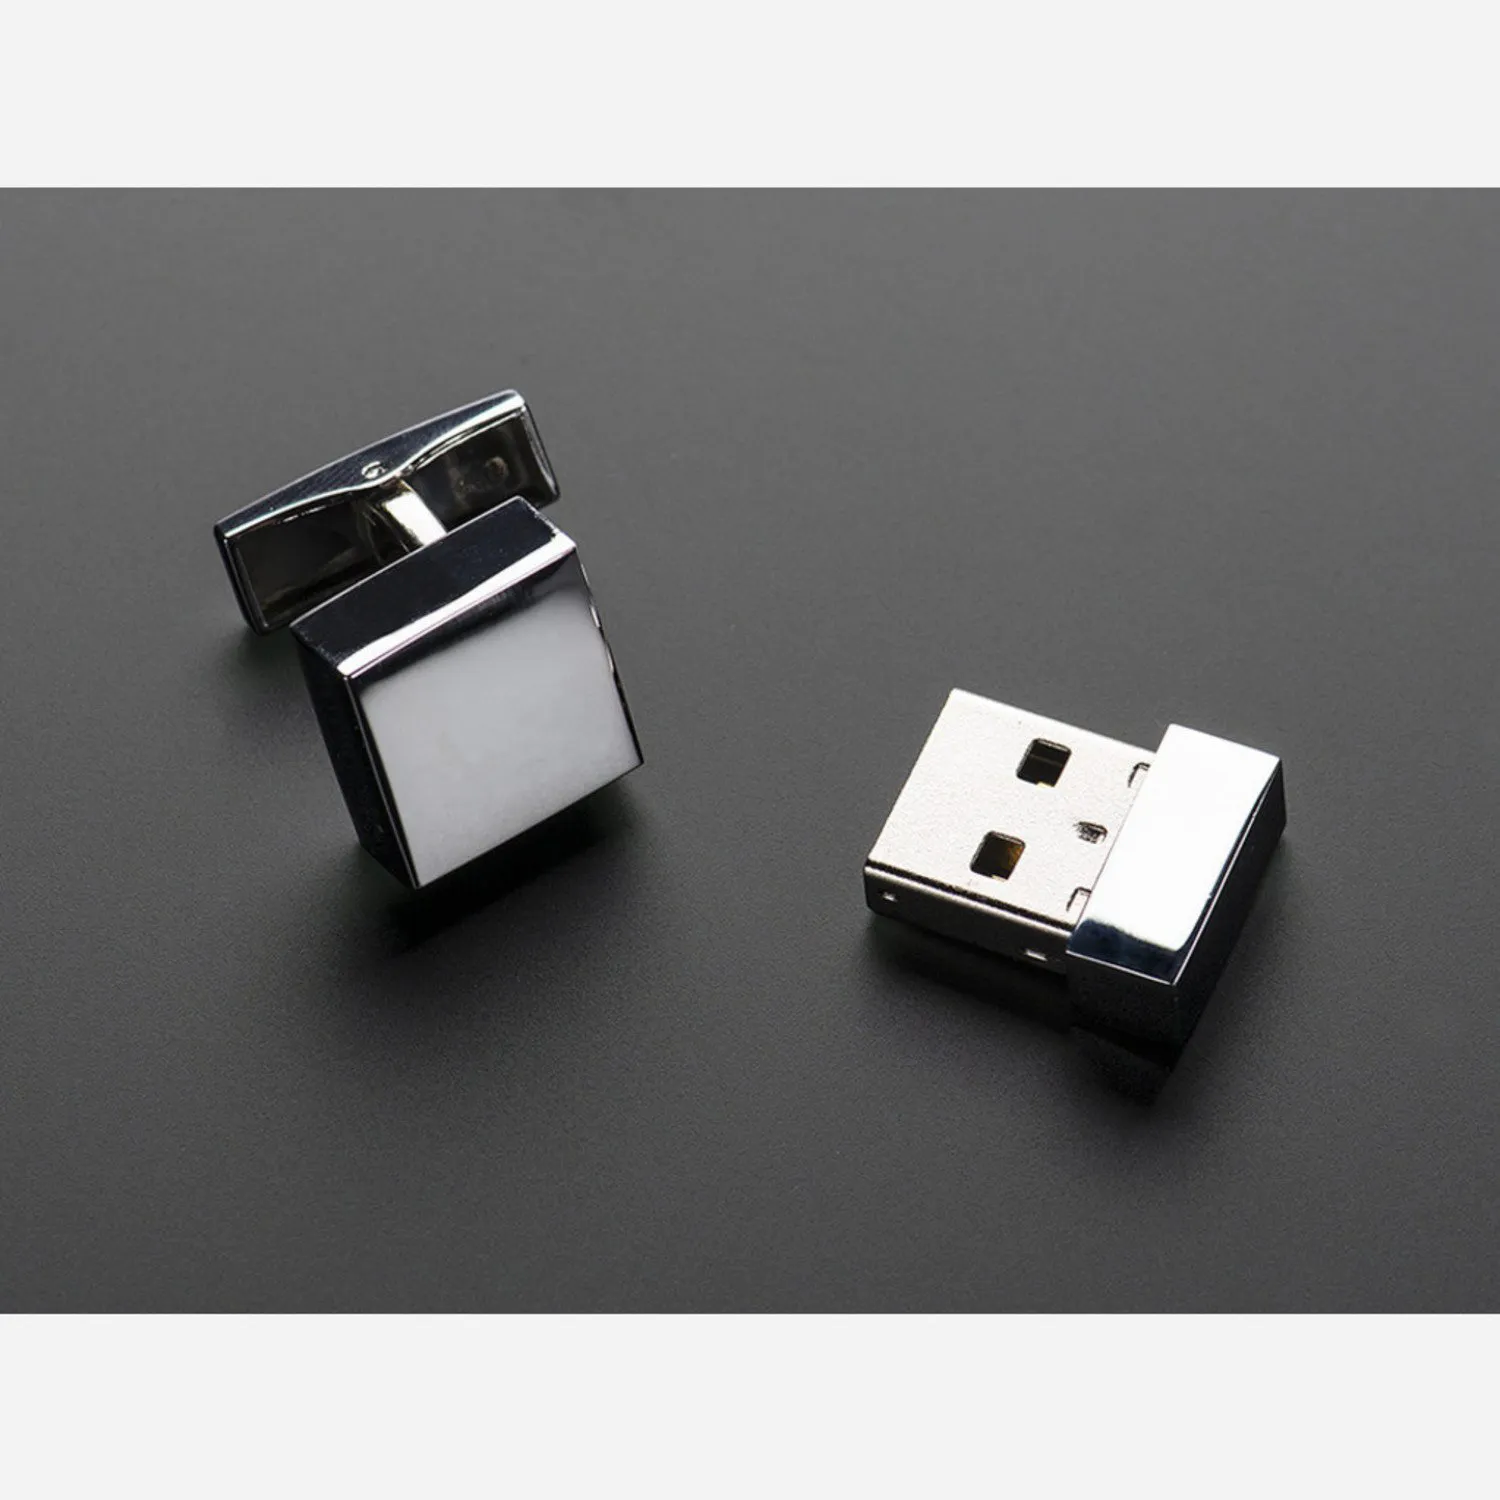 Photo of USB Flashdrive Cufflinks - 4 GB Storage